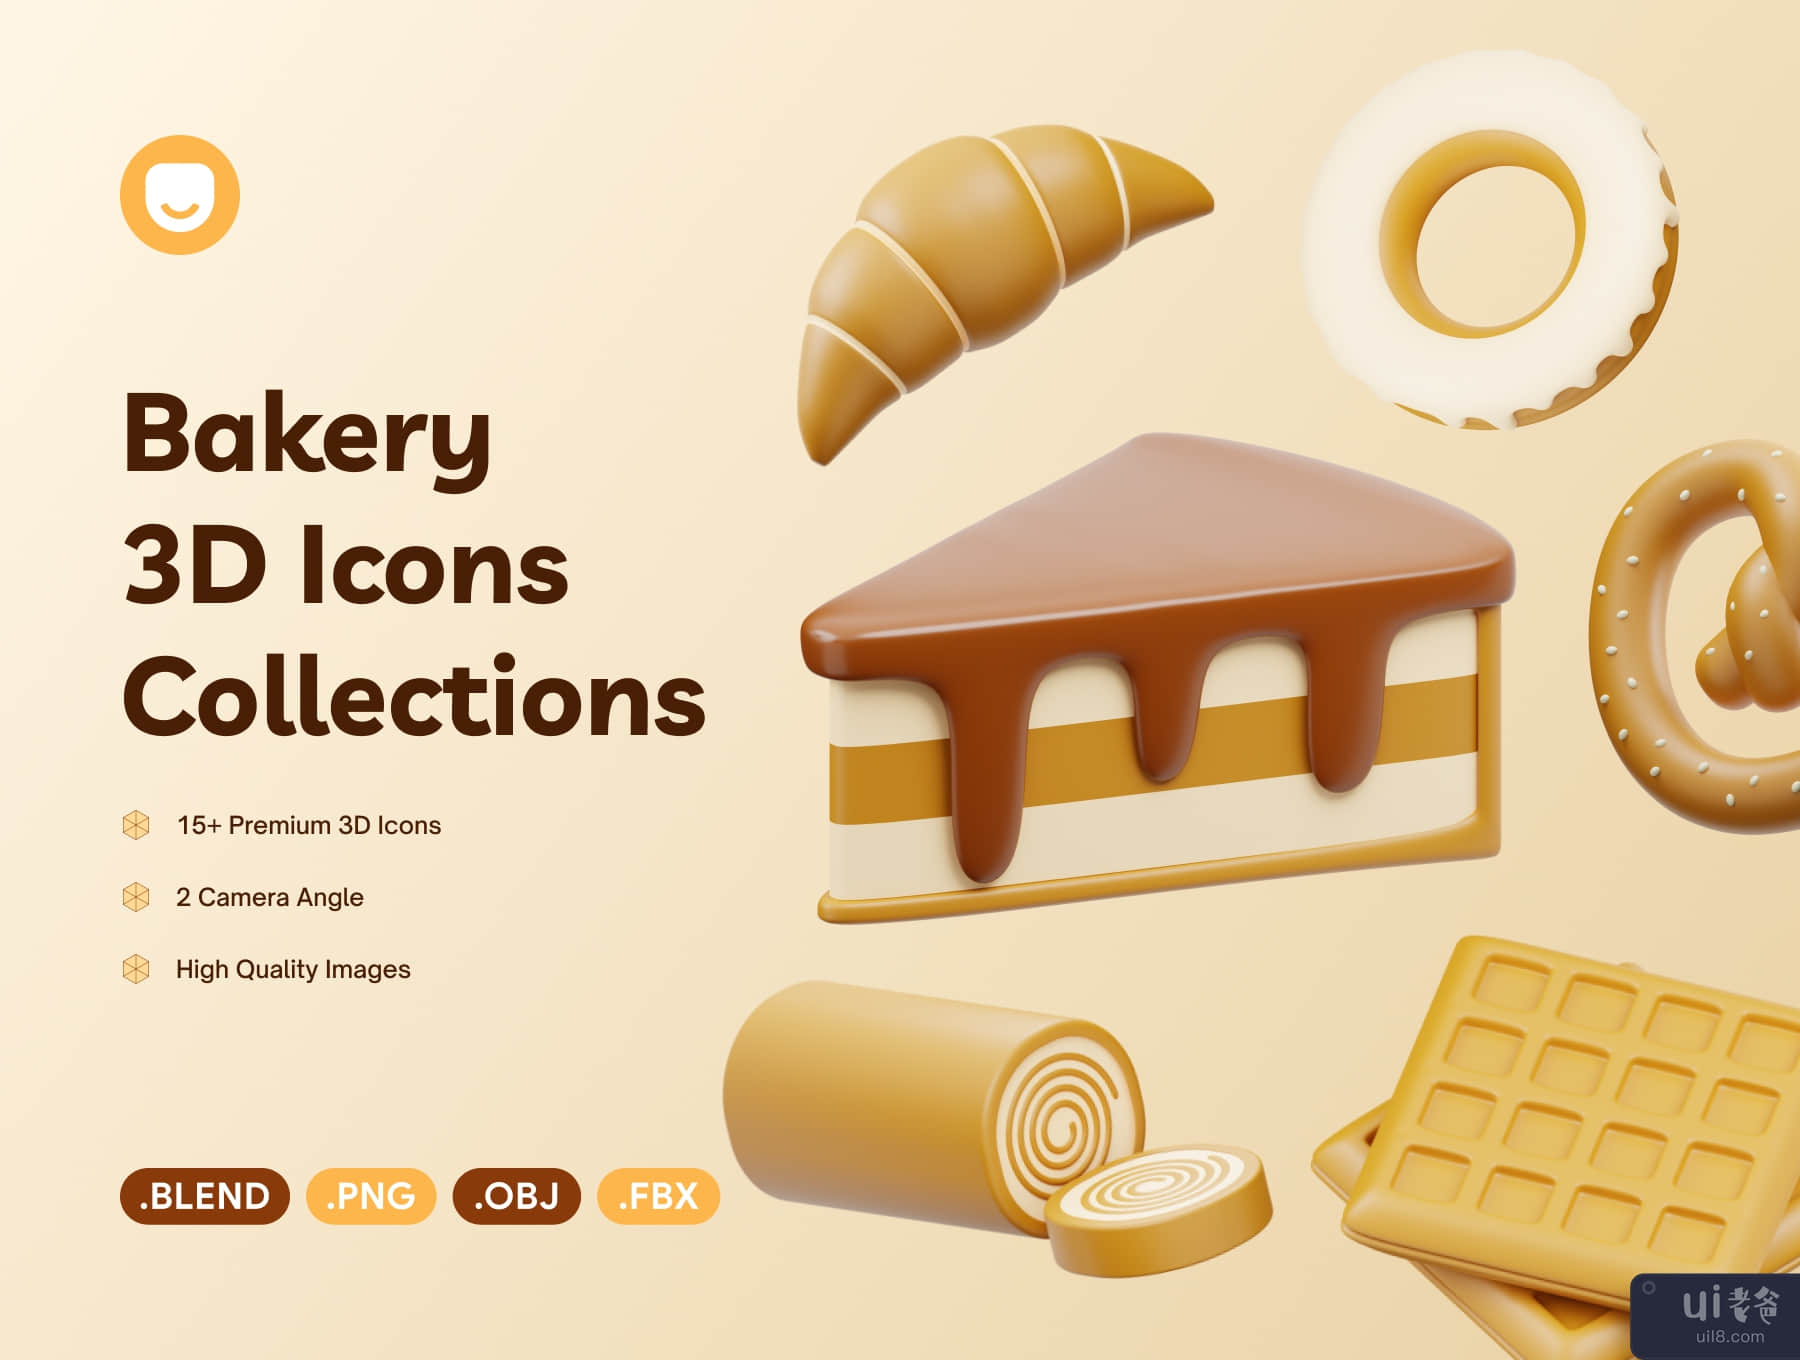 面包店 3D 图标 (Bakery 3D Icon)插图3